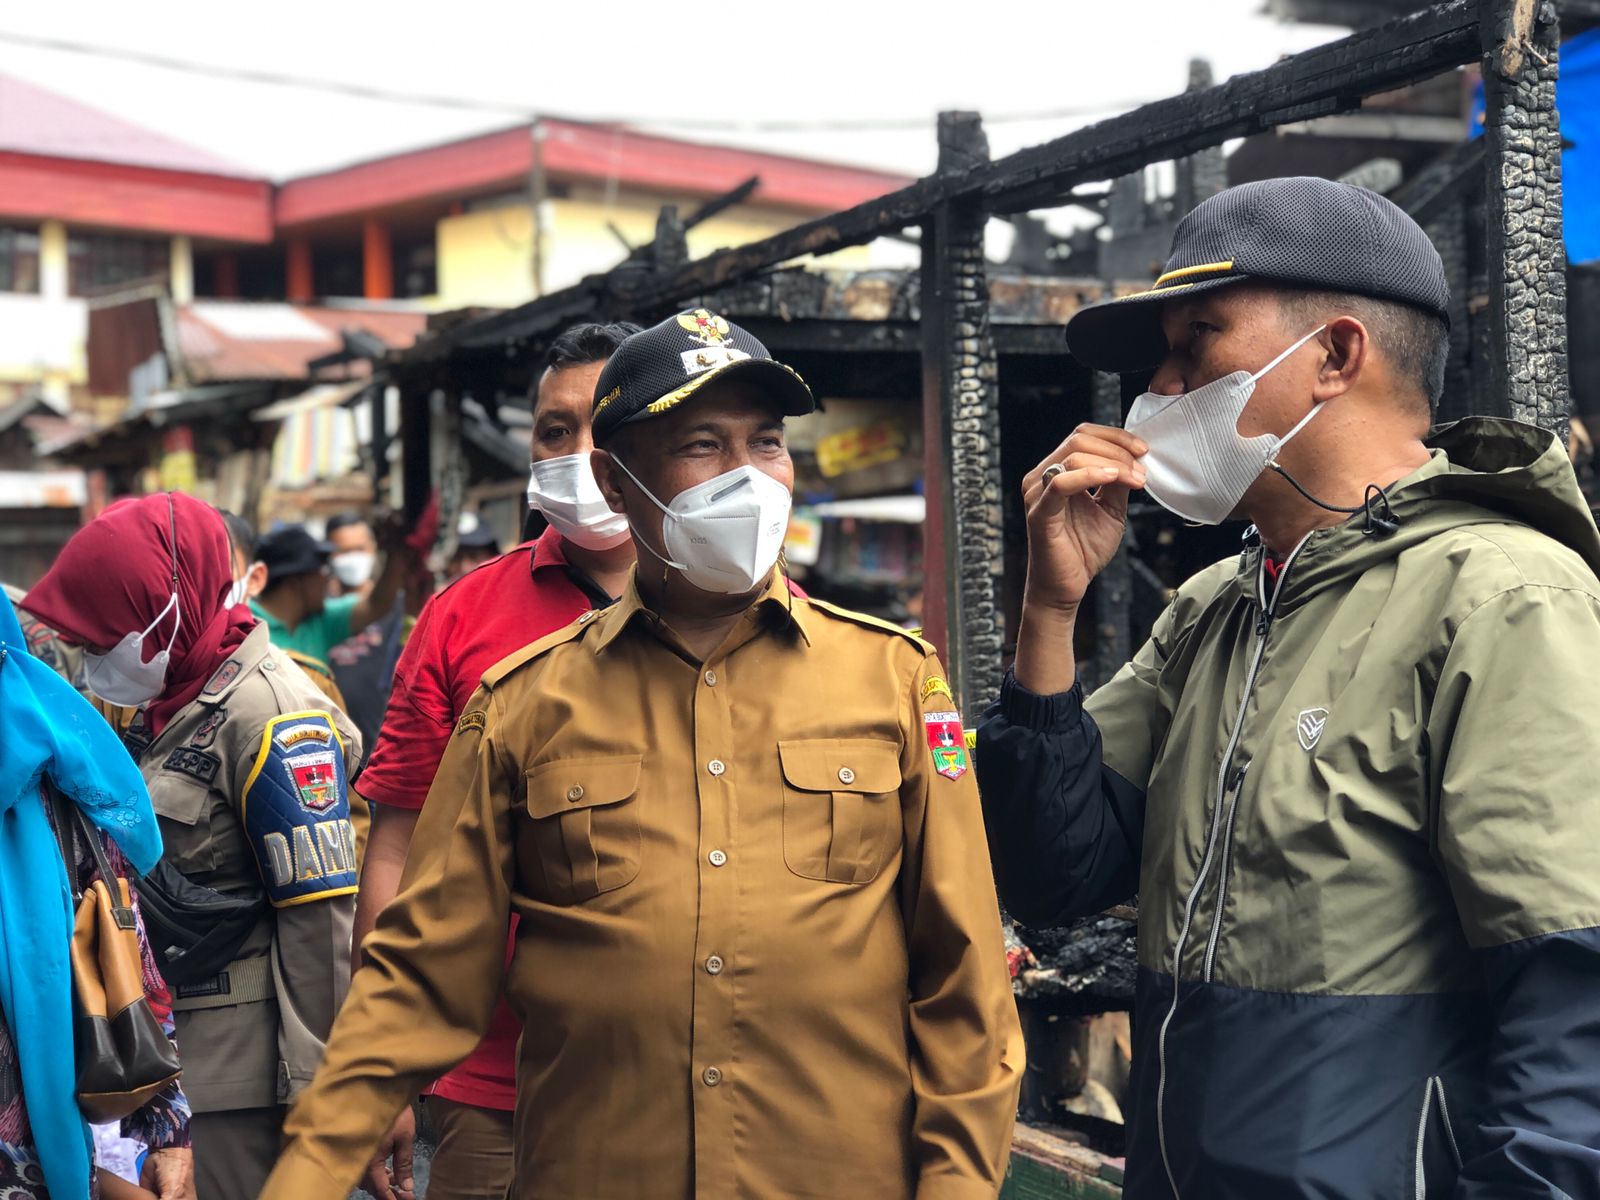 Tinjau Pasar Bawah yang Terbakar, Marfendi Minta Masyarakat Agar Berprasangka Positif – Beritasumbar.com